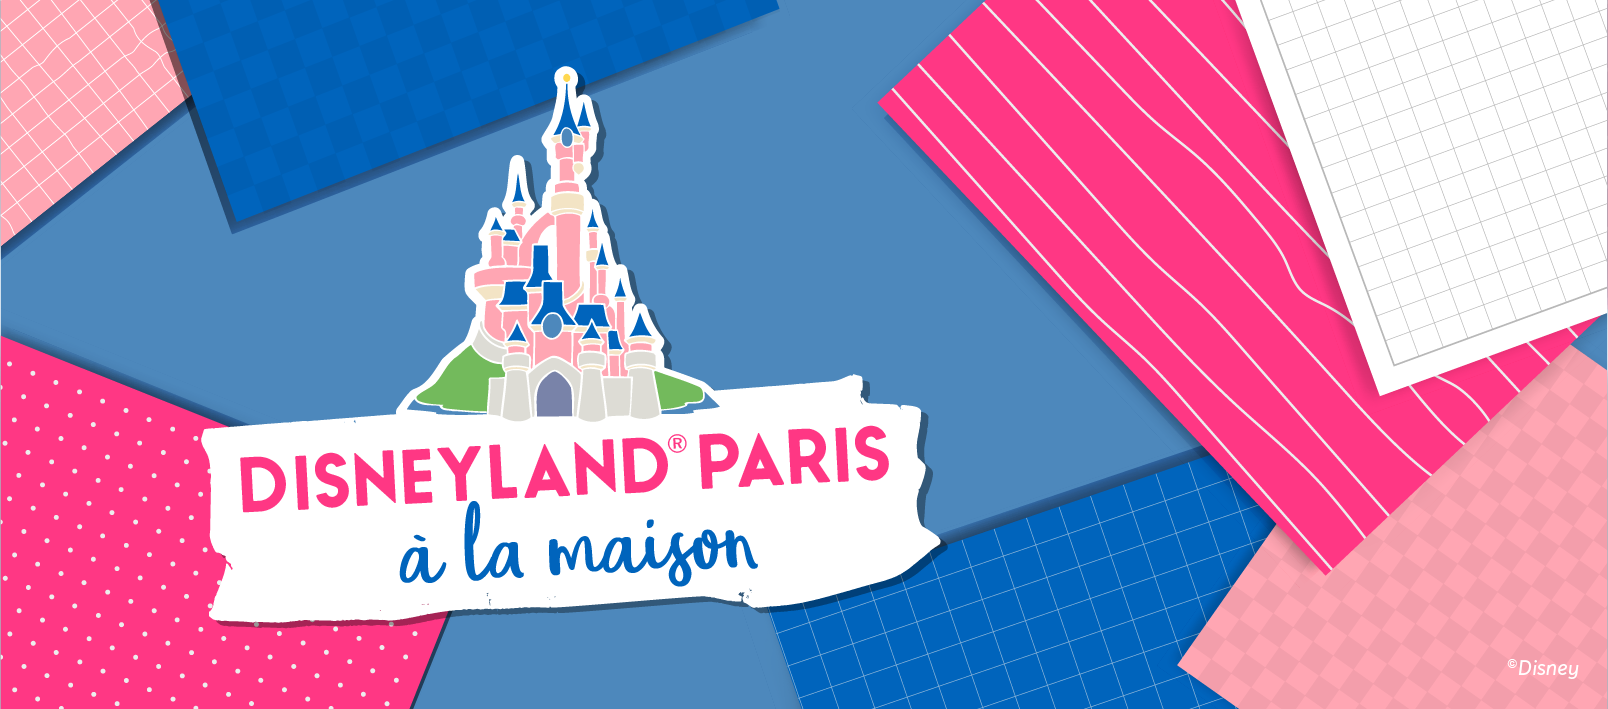 Disneyland Paris lance “Disneyland Paris à la maison”, sa nouvelle plateforme d’activités gratuites pour toute la famille !